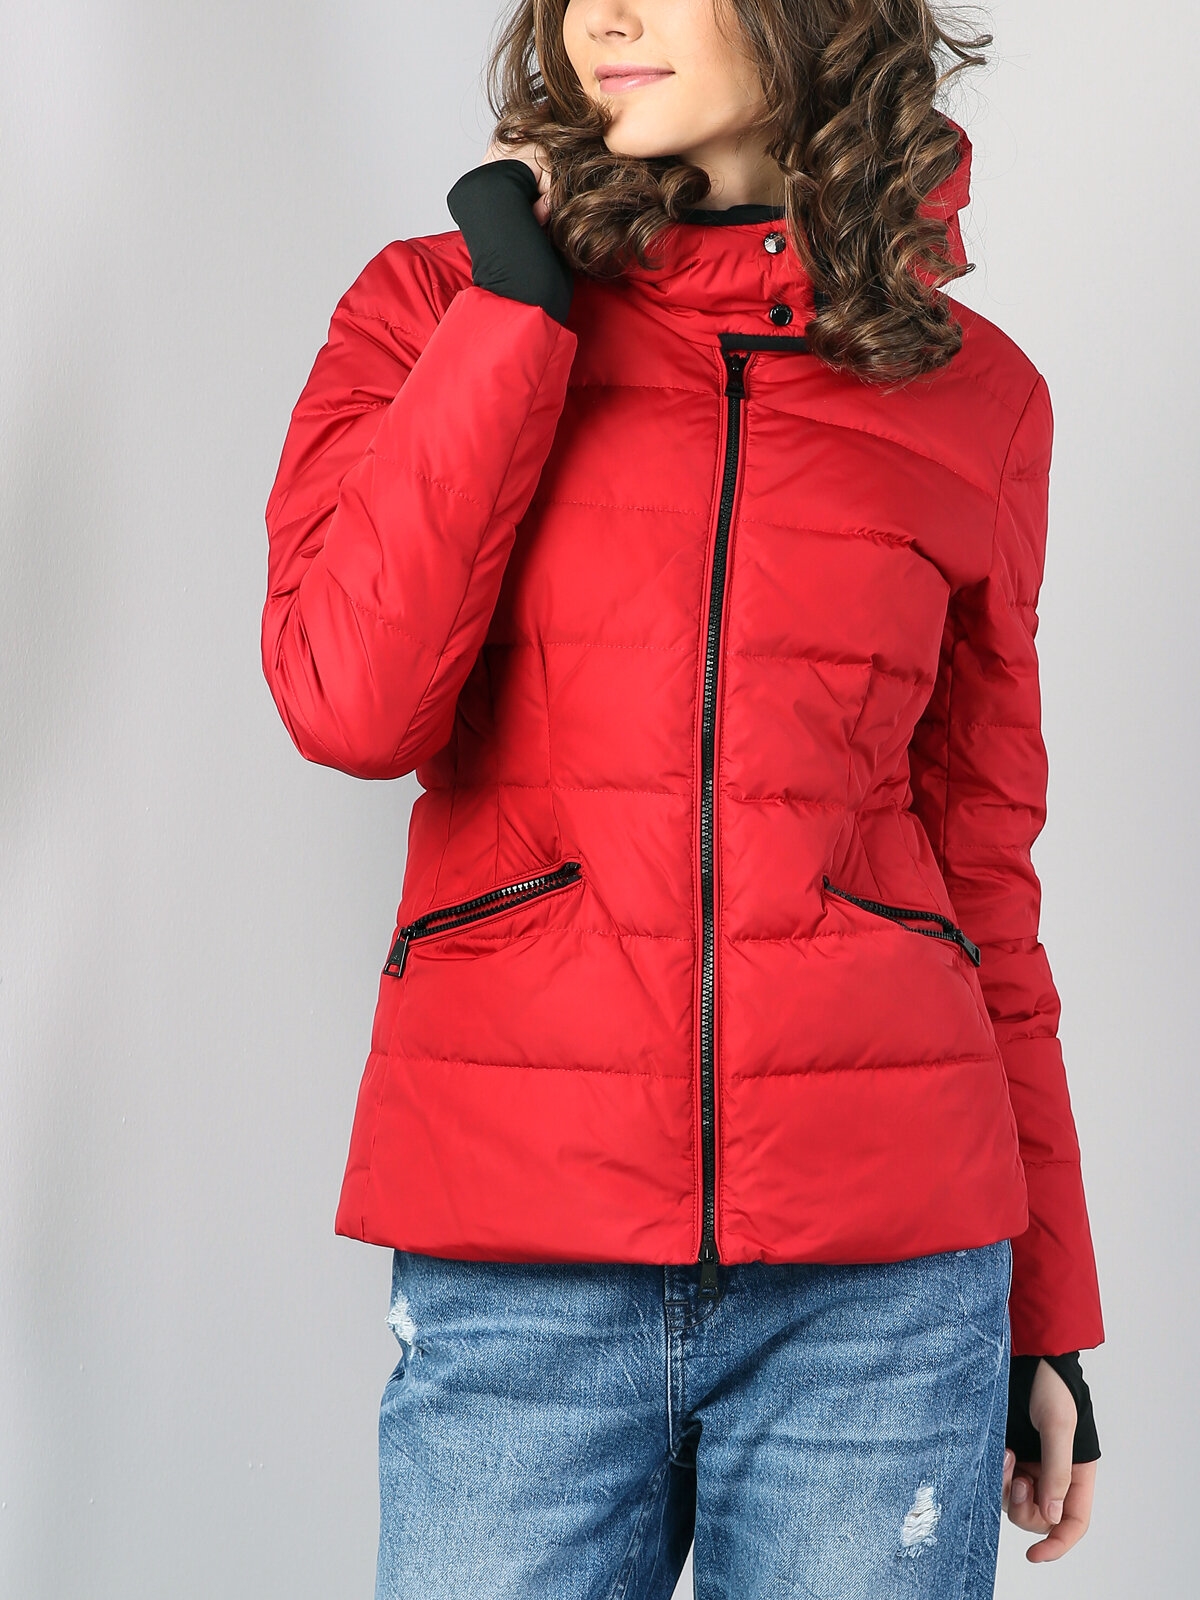 Показати інформацію про Куртка Жіноча Червона Класичного Крою Cl1036118